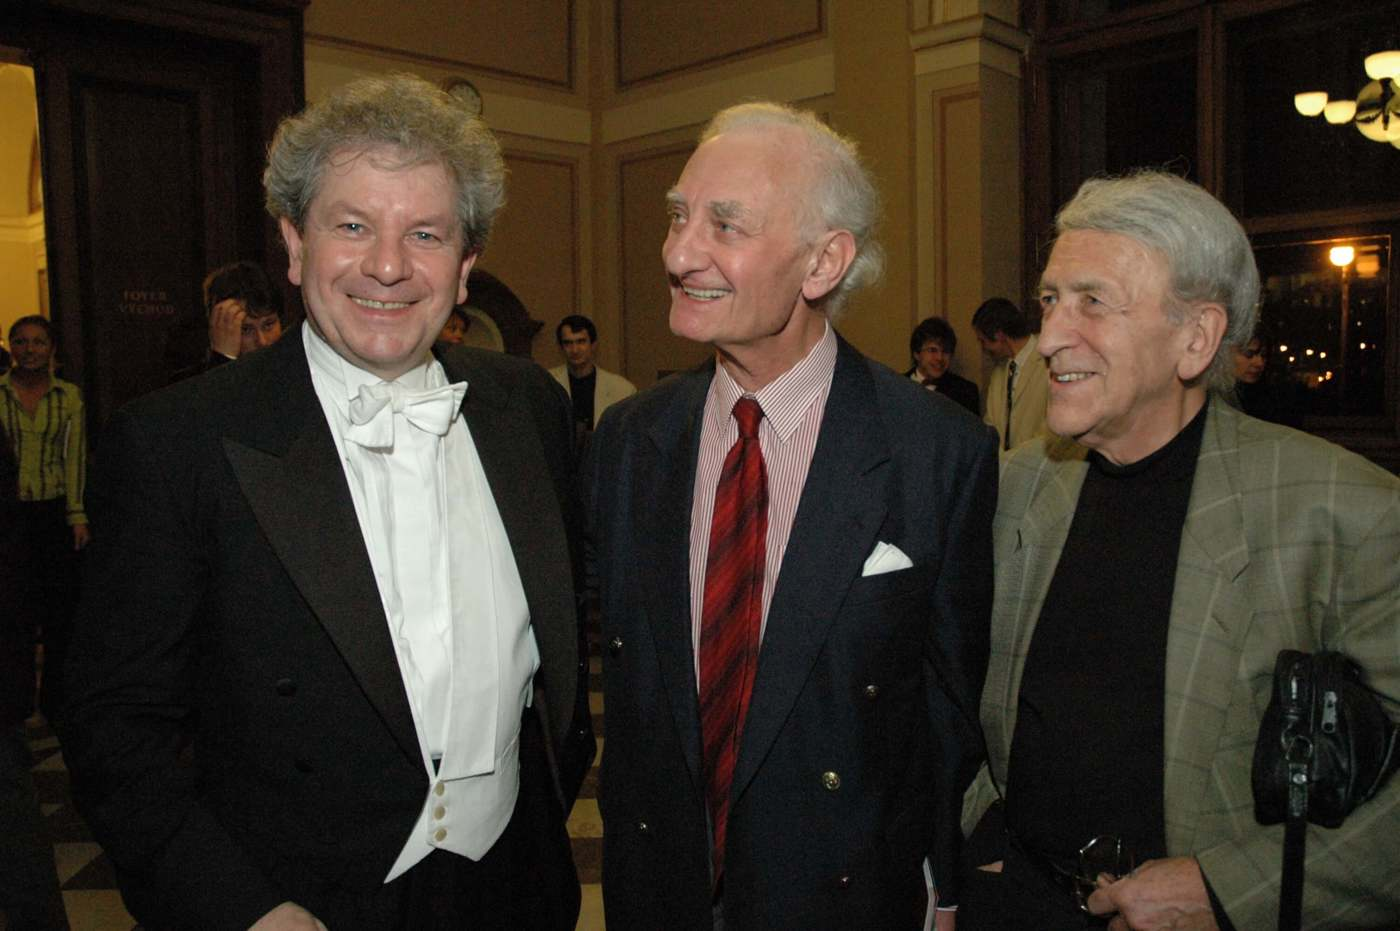 Jiří Bělohlávek with the conductor Martin Turnovský and the composer Oldřich Korte